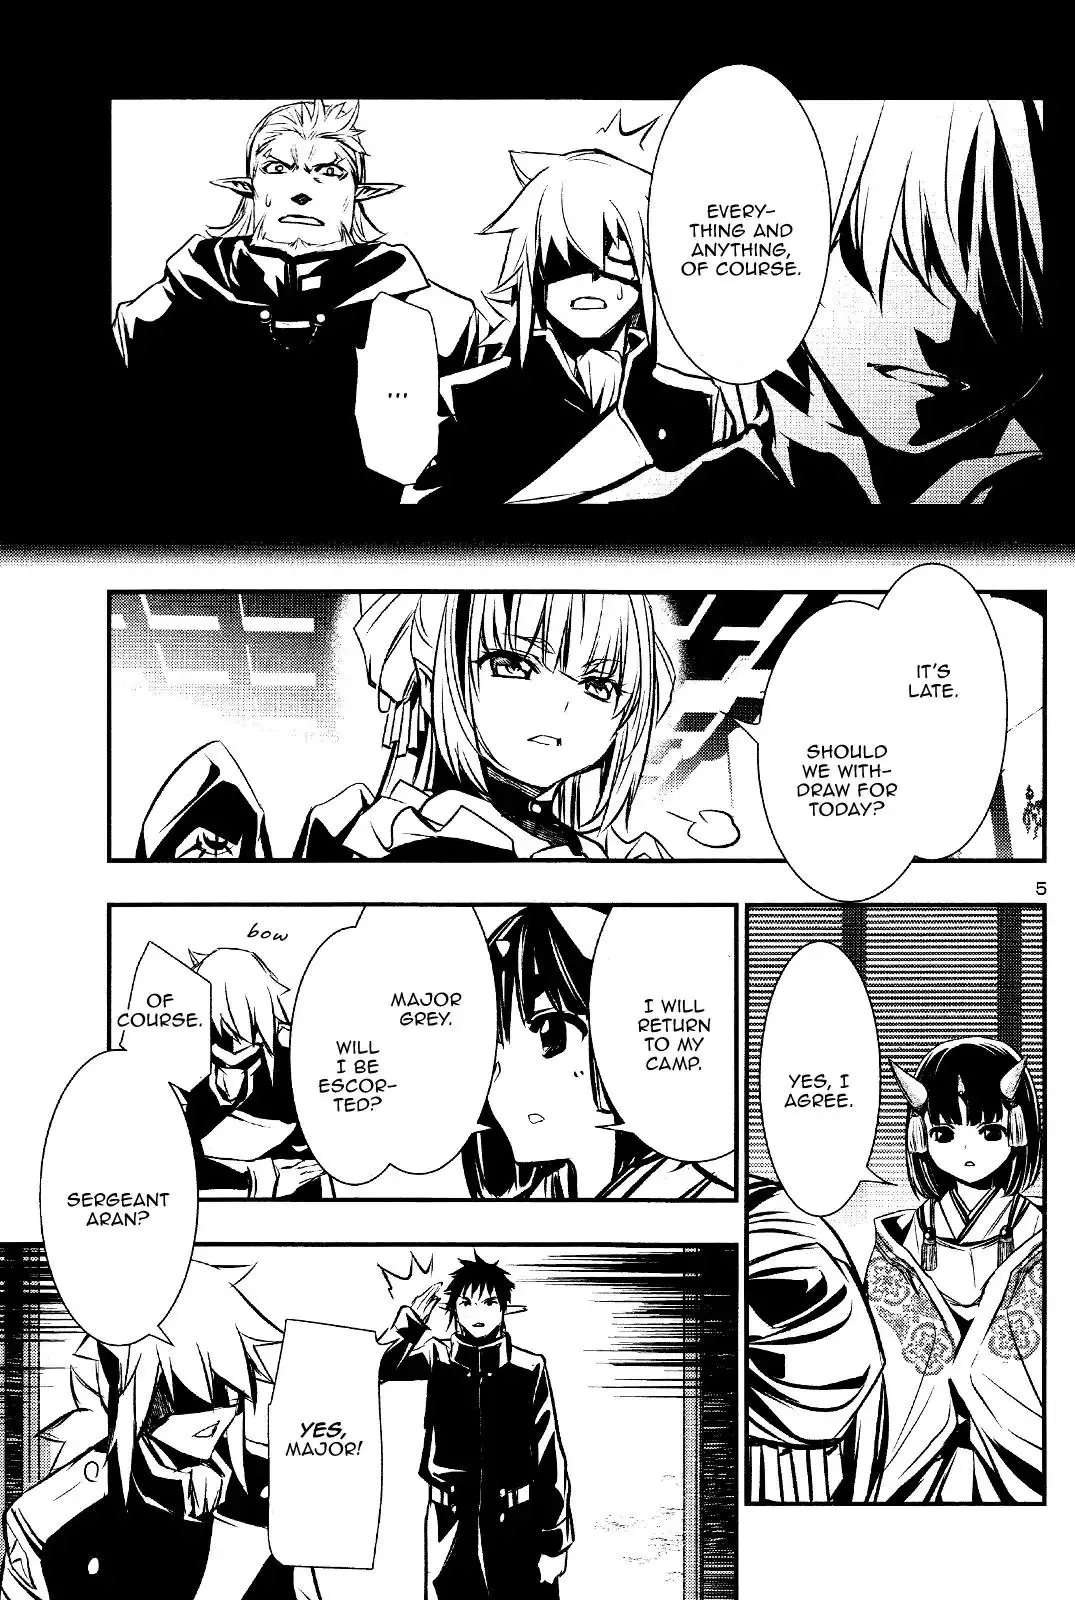 Shinju no Nectar - 29 page 5